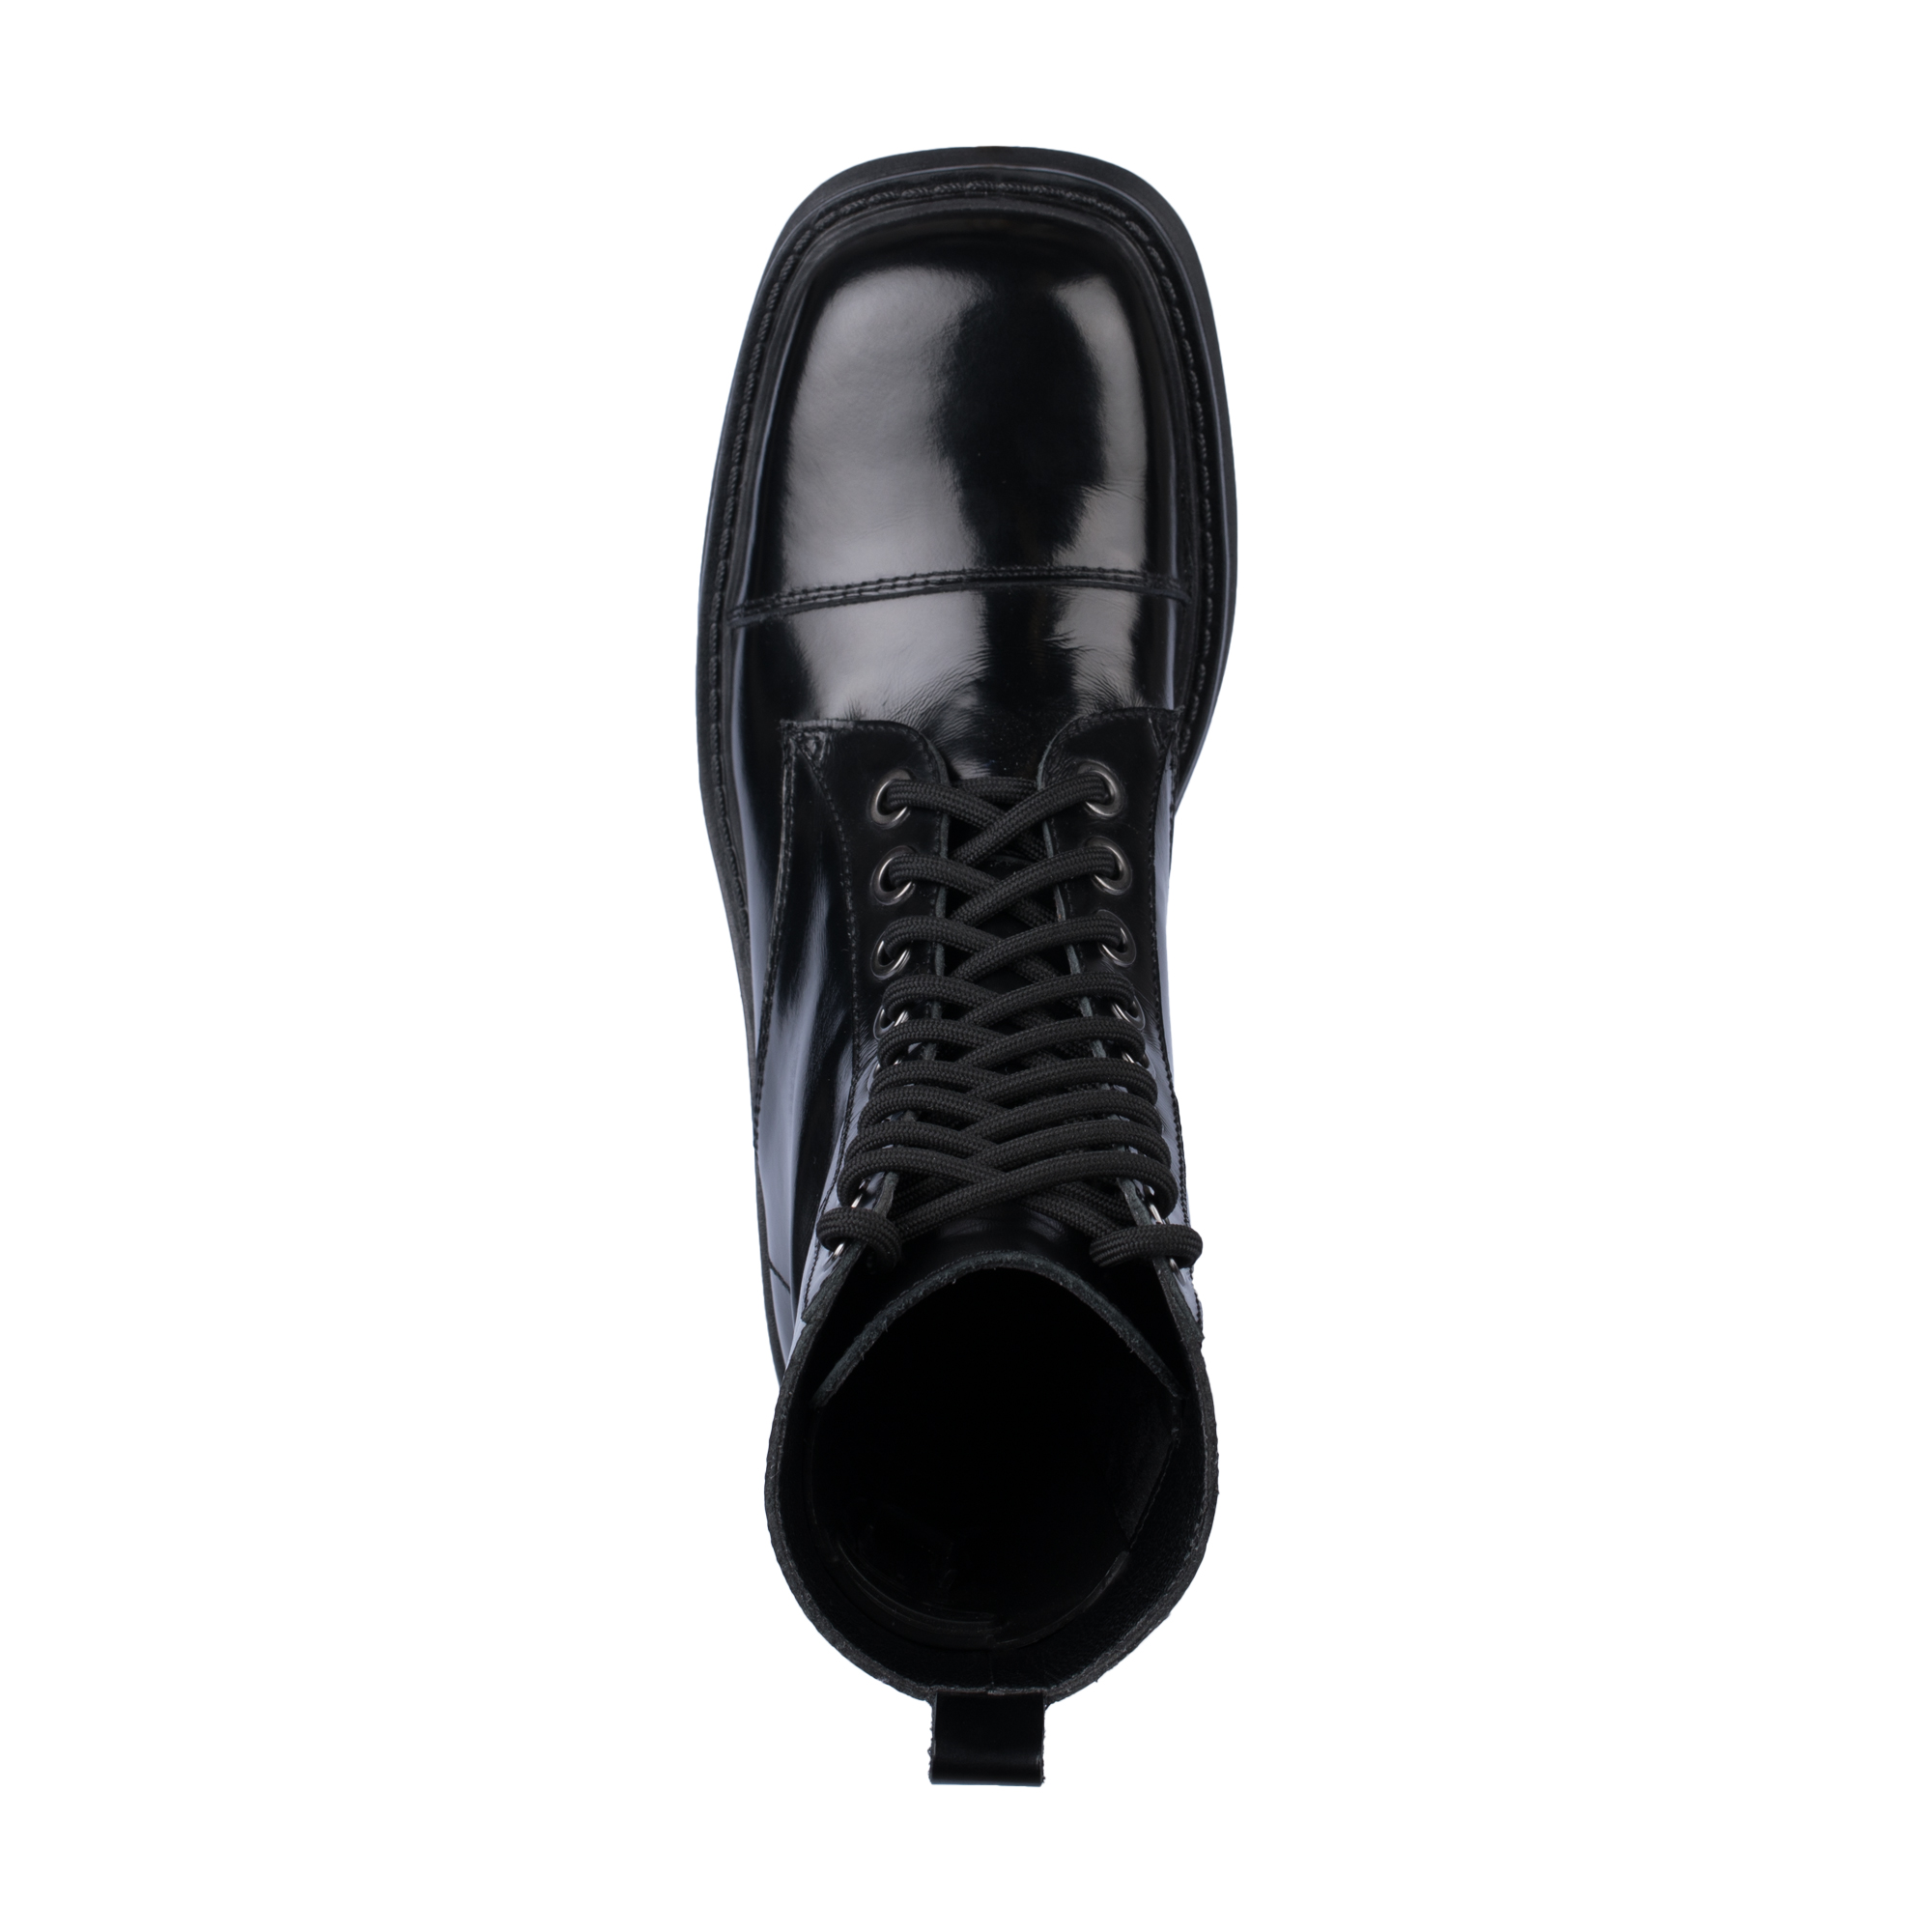 Ботинки Thomas Munz 126-400A-2102, цвет черный, размер 38 - фото 5